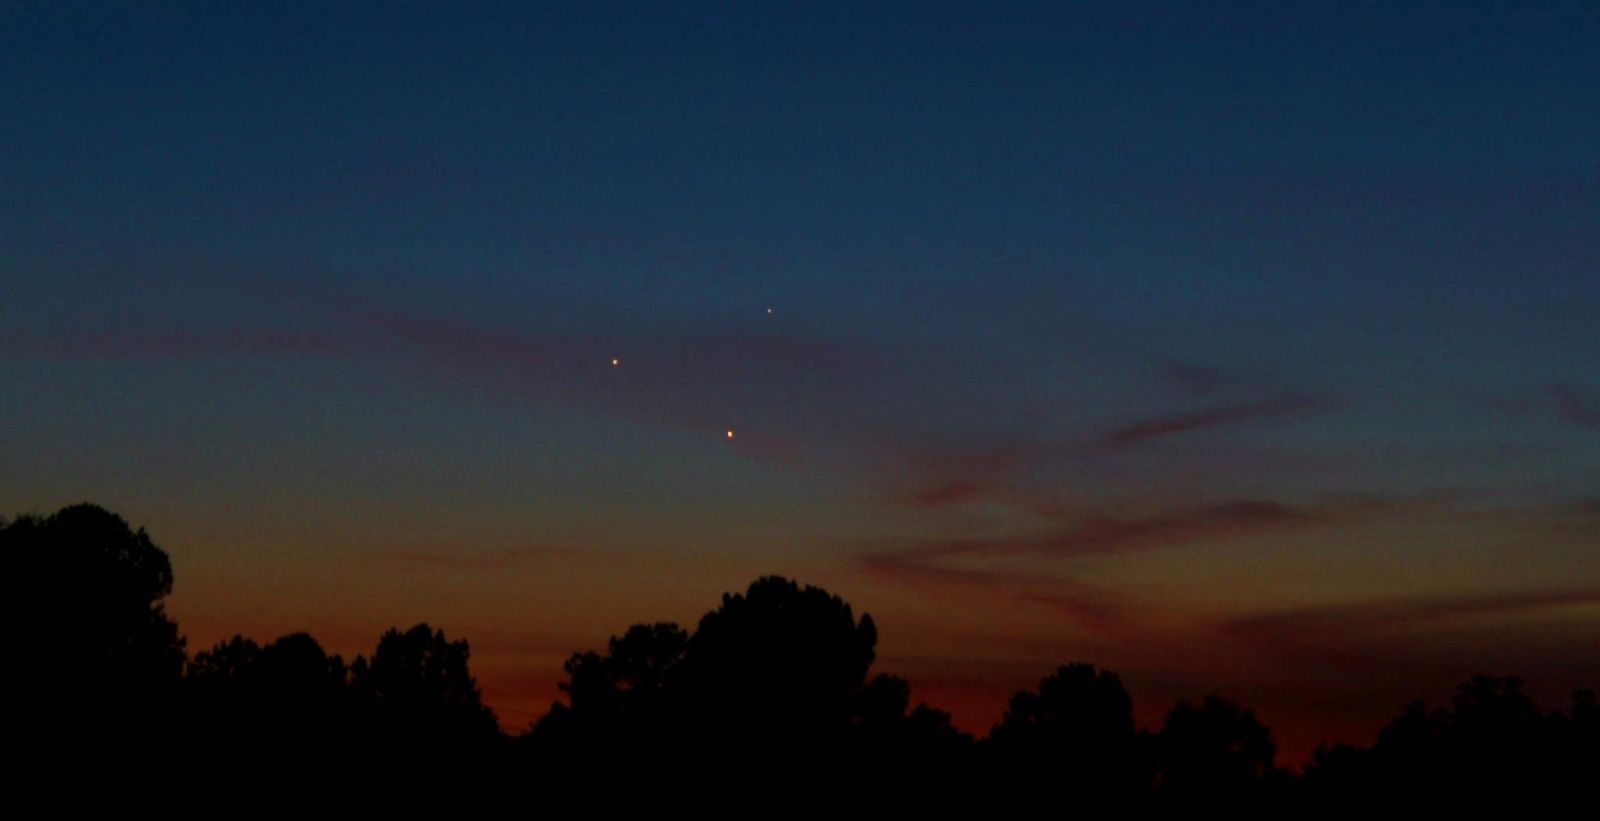 بالصور ظهور نادر للكواكب الثلاثة في سماء الارض